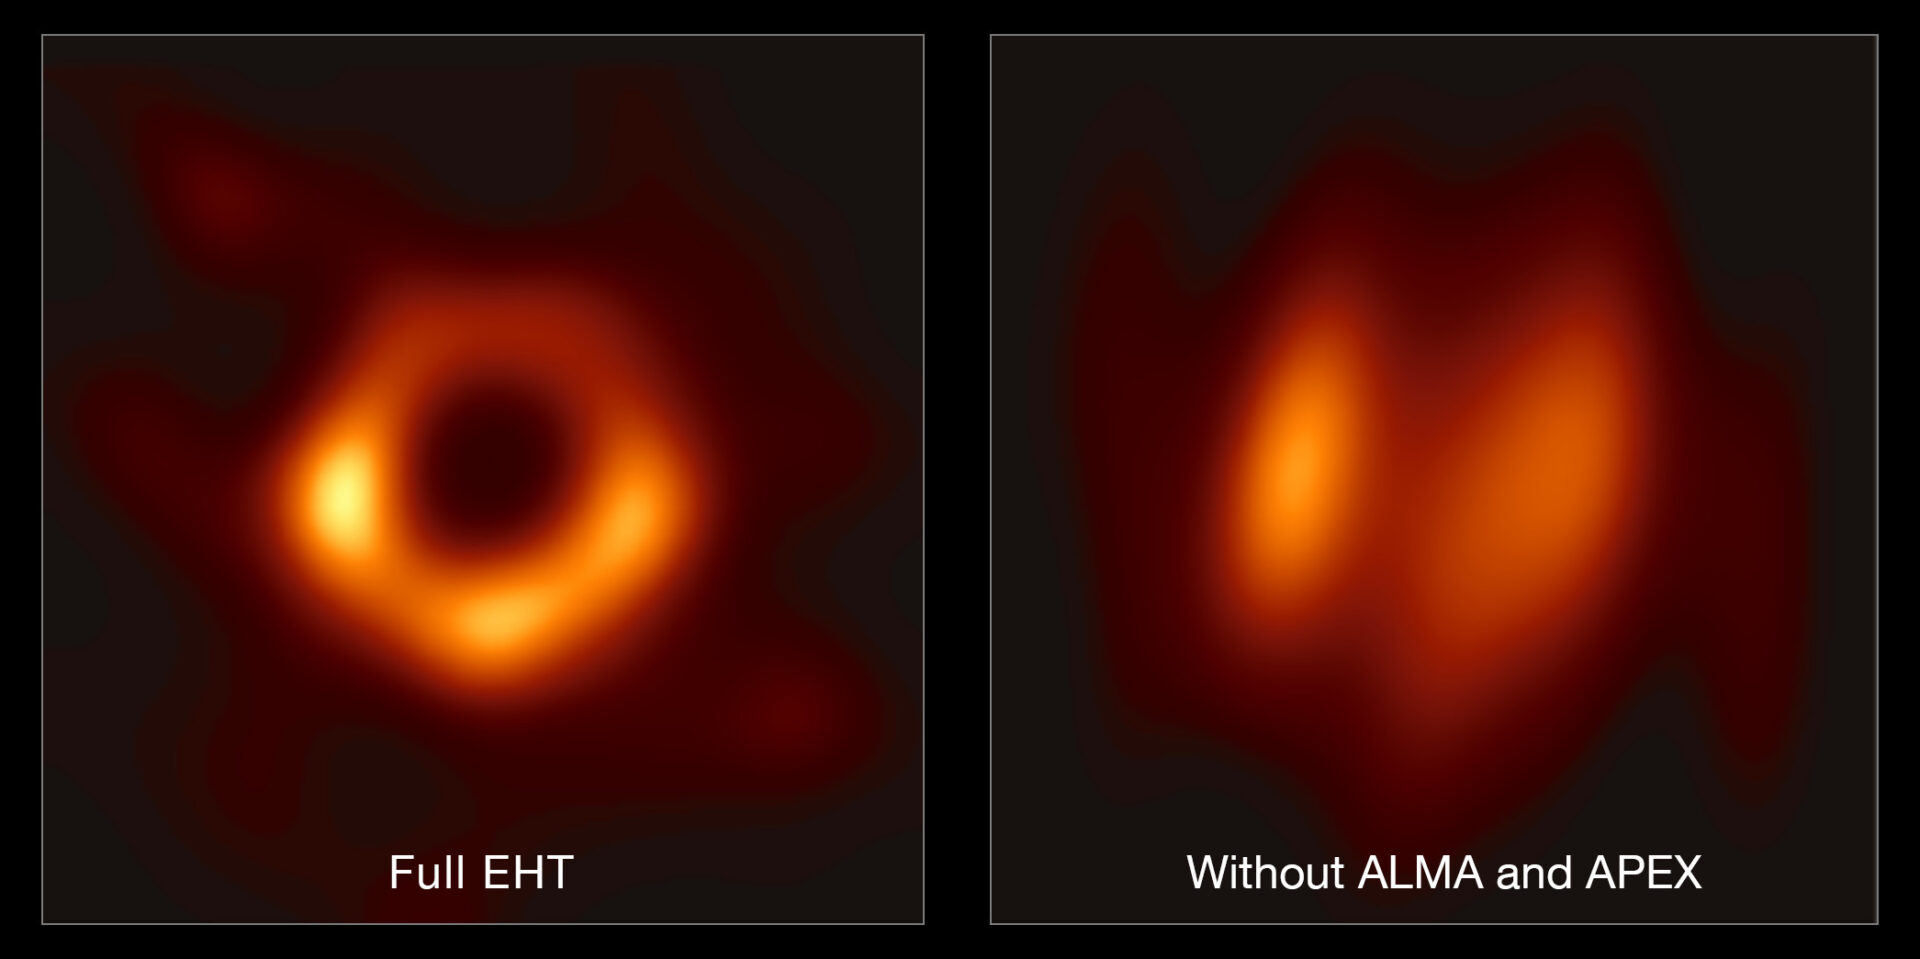 Esta imagen muestra el aporte de ALMA y APEX al EHT. La imagen de la izquierda muestra una reconstrucción de la imagen del agujero negro usando todo el conjunto del Telescopio de Horizonte de Sucesos (incluyendo a ALMA y APEX); la imagen de la derecha muestra como luciría la reconstrucción sin los datos de ALMA y APEX. La diferencia muestra claramente el aporte crucial que ALMA y APEX tuvieron en las observaciones. Crédito: EHT Collaboration